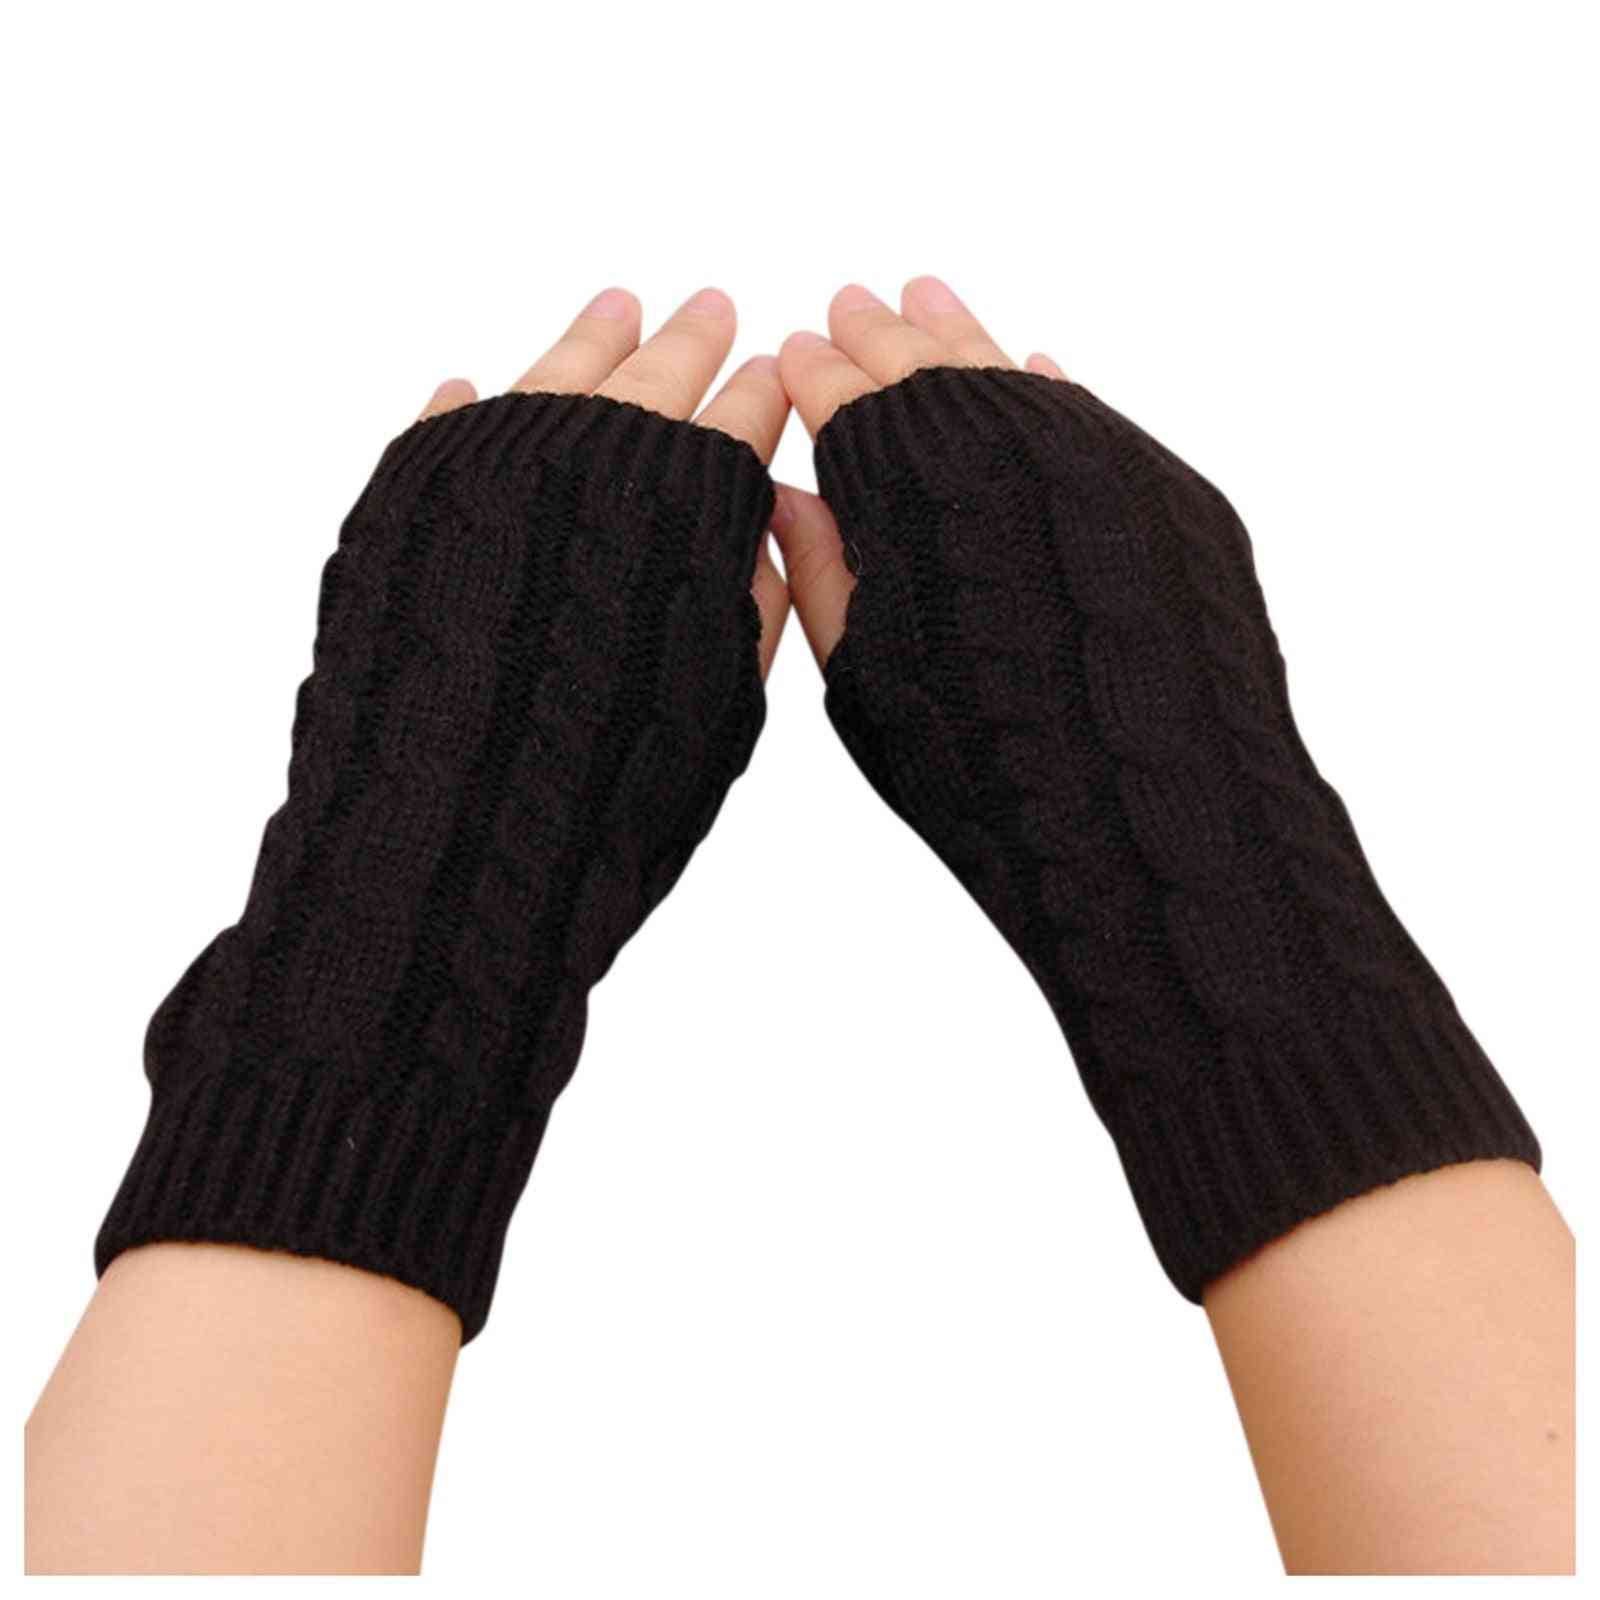 1 paire de gants d'équitation tricotés en hiver pour garder au chaud